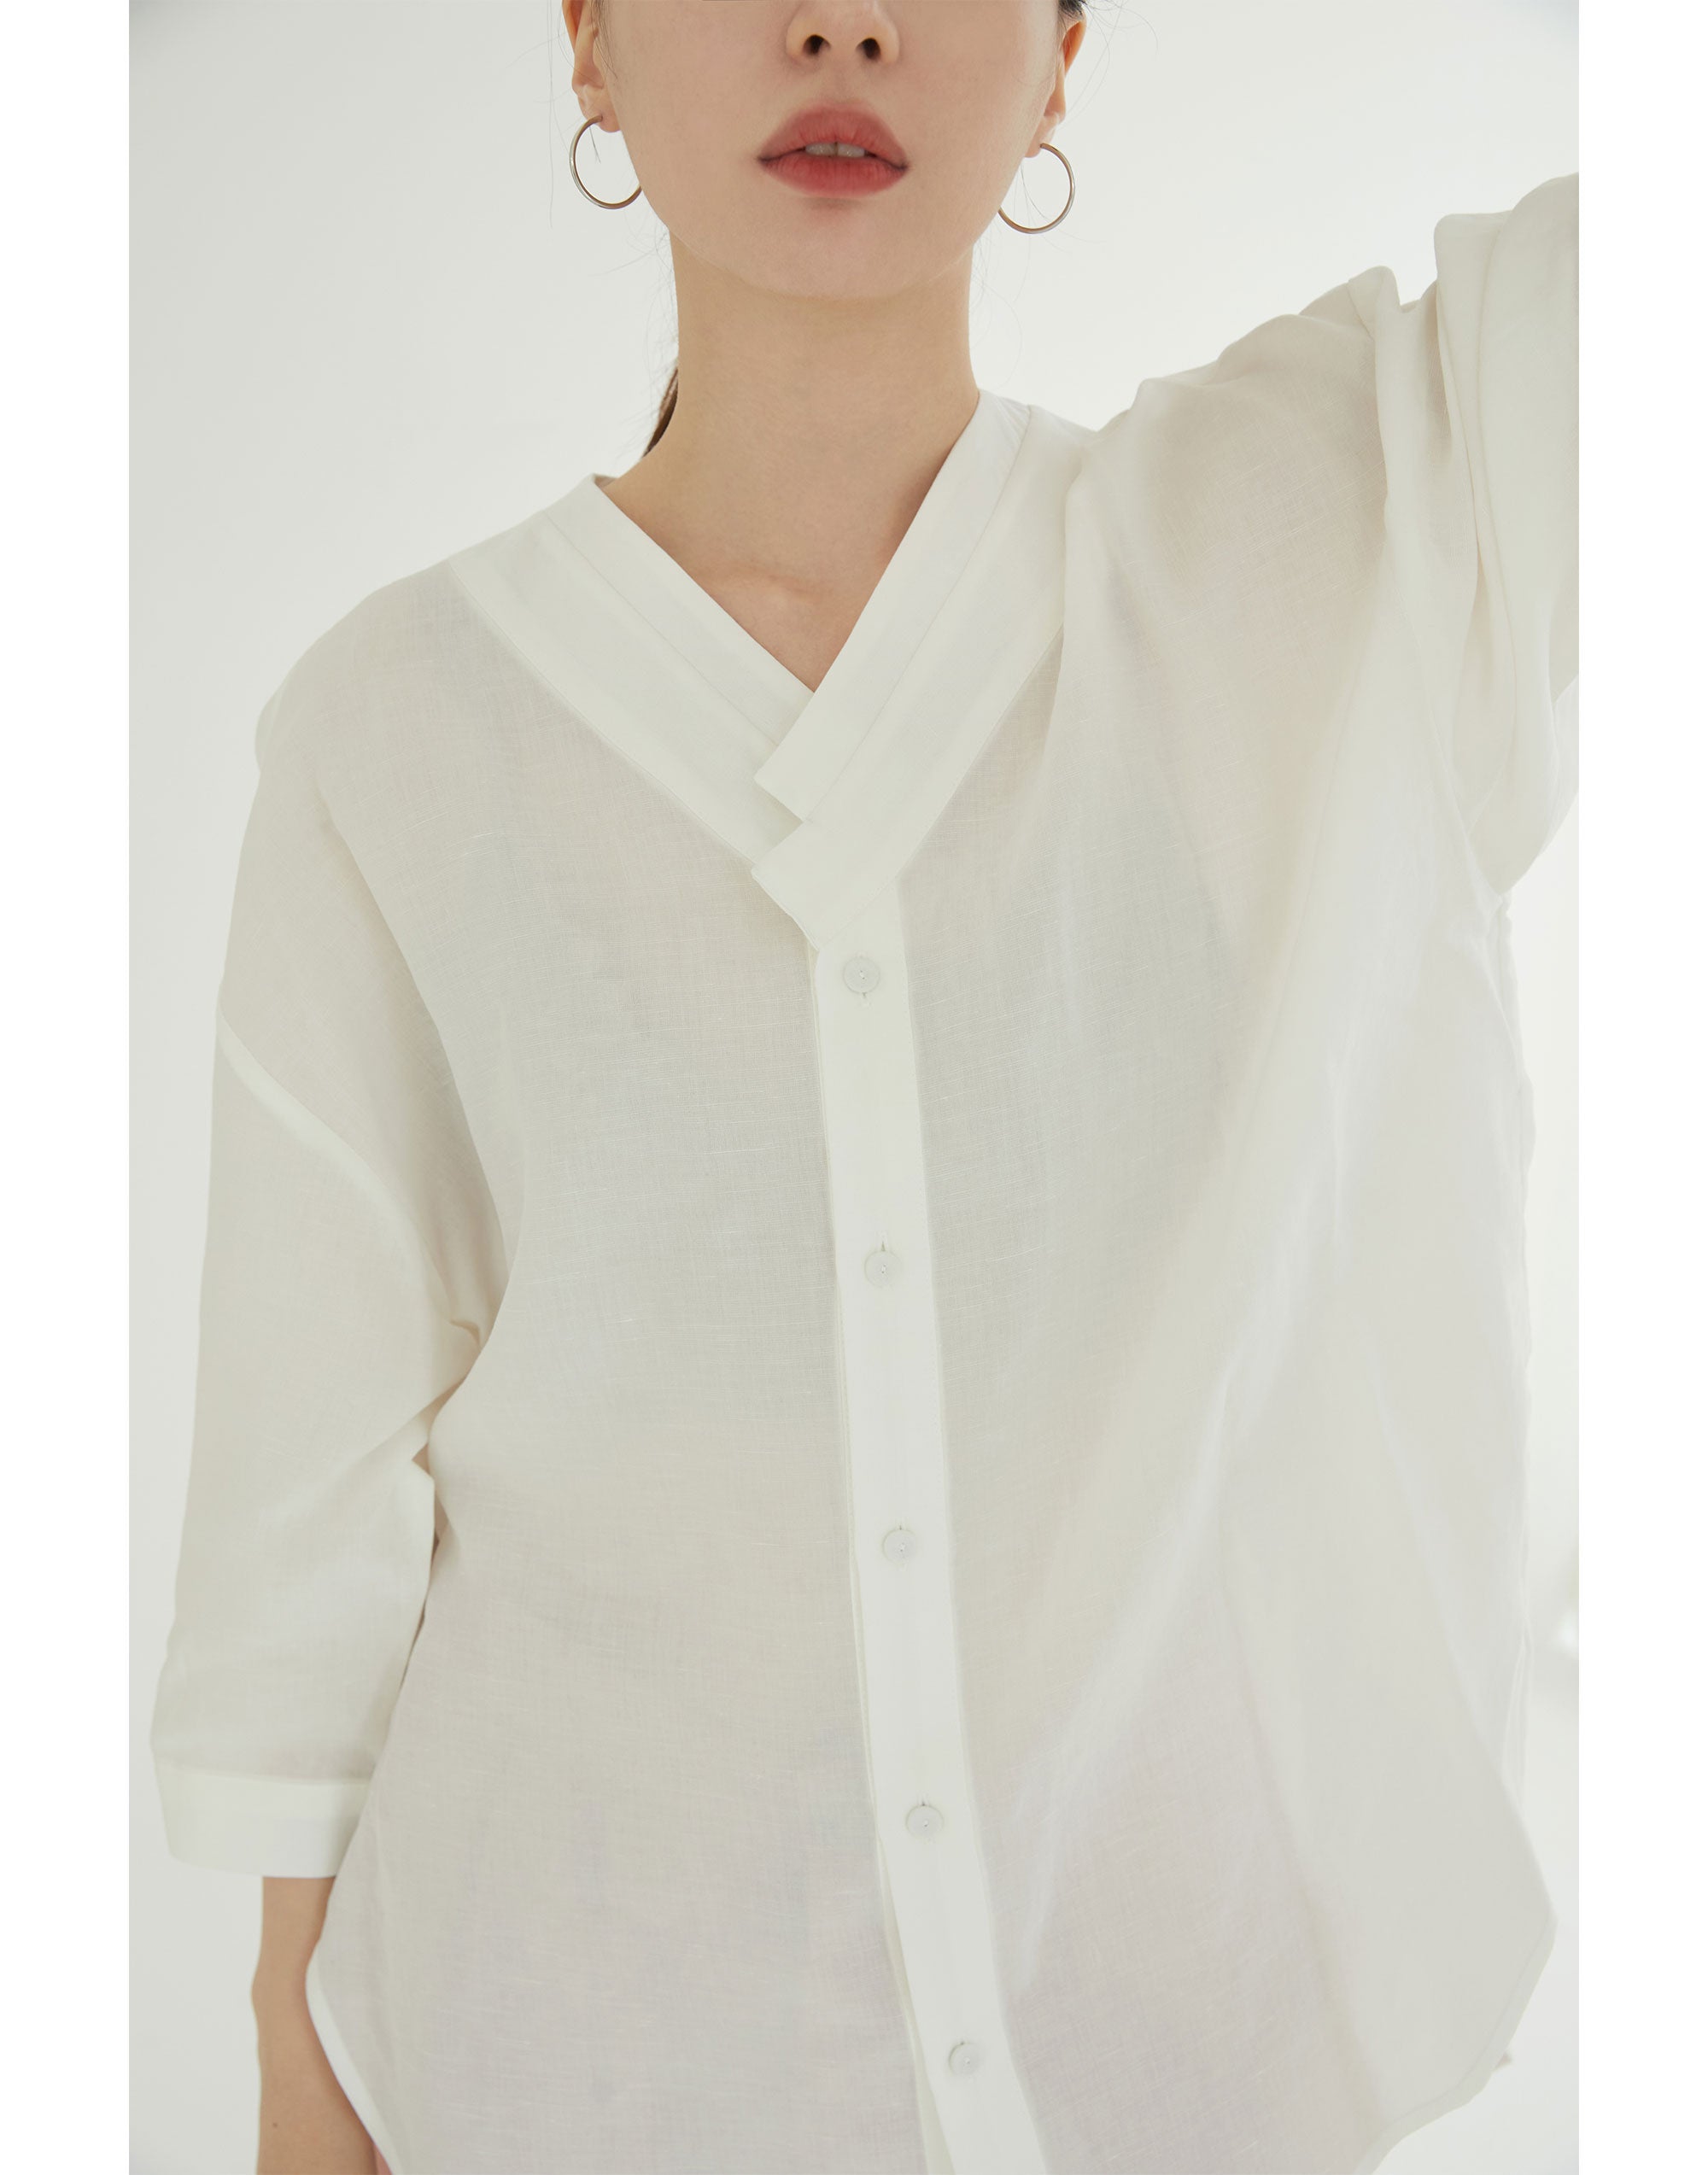 Blouse Shirts - Damyang (3colors)